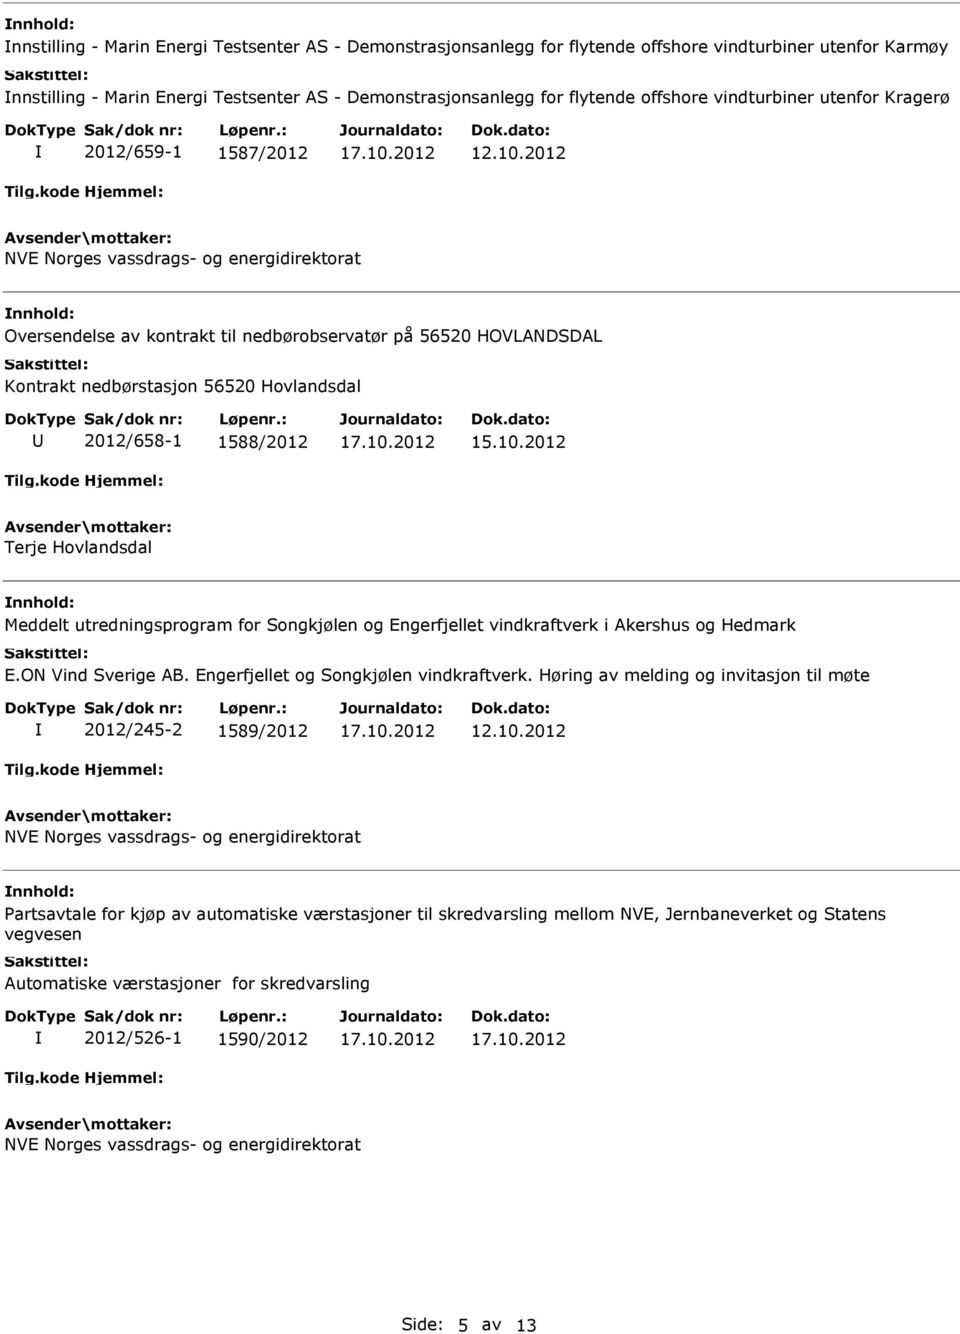 2012/658-1 1588/2012 Terje Hovlandsdal Meddelt utredningsprogram for Songkjølen og Engerfjellet vindkraftverk i Akershus og Hedmark E.ON Vind Sverige AB. Engerfjellet og Songkjølen vindkraftverk.